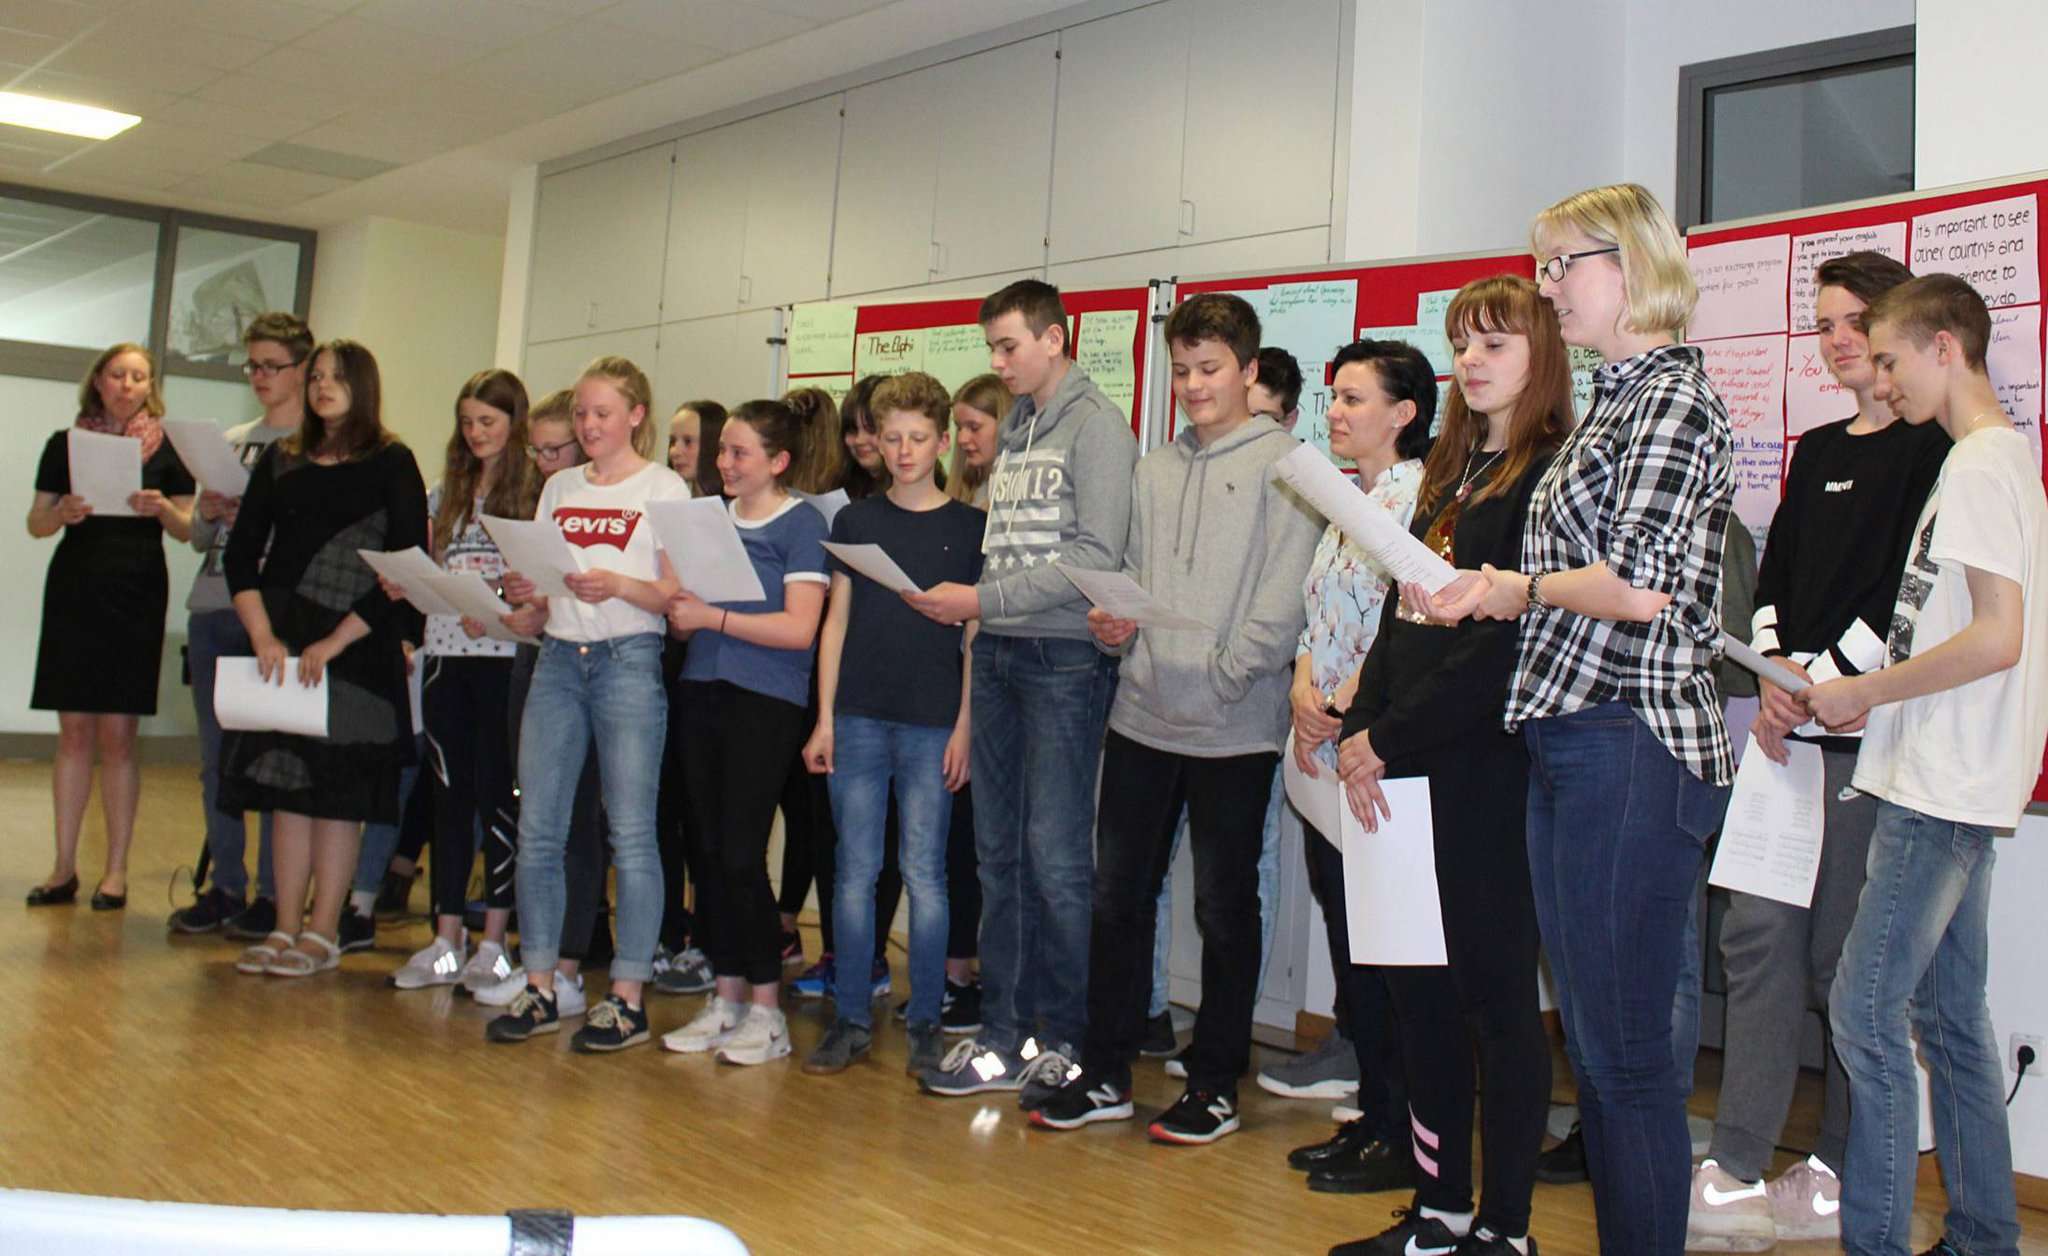 Mit Liedern begleiteten die Schüler und ihre Austauschgäste die Feierstunde. Fotos: Ann-Christin Beims